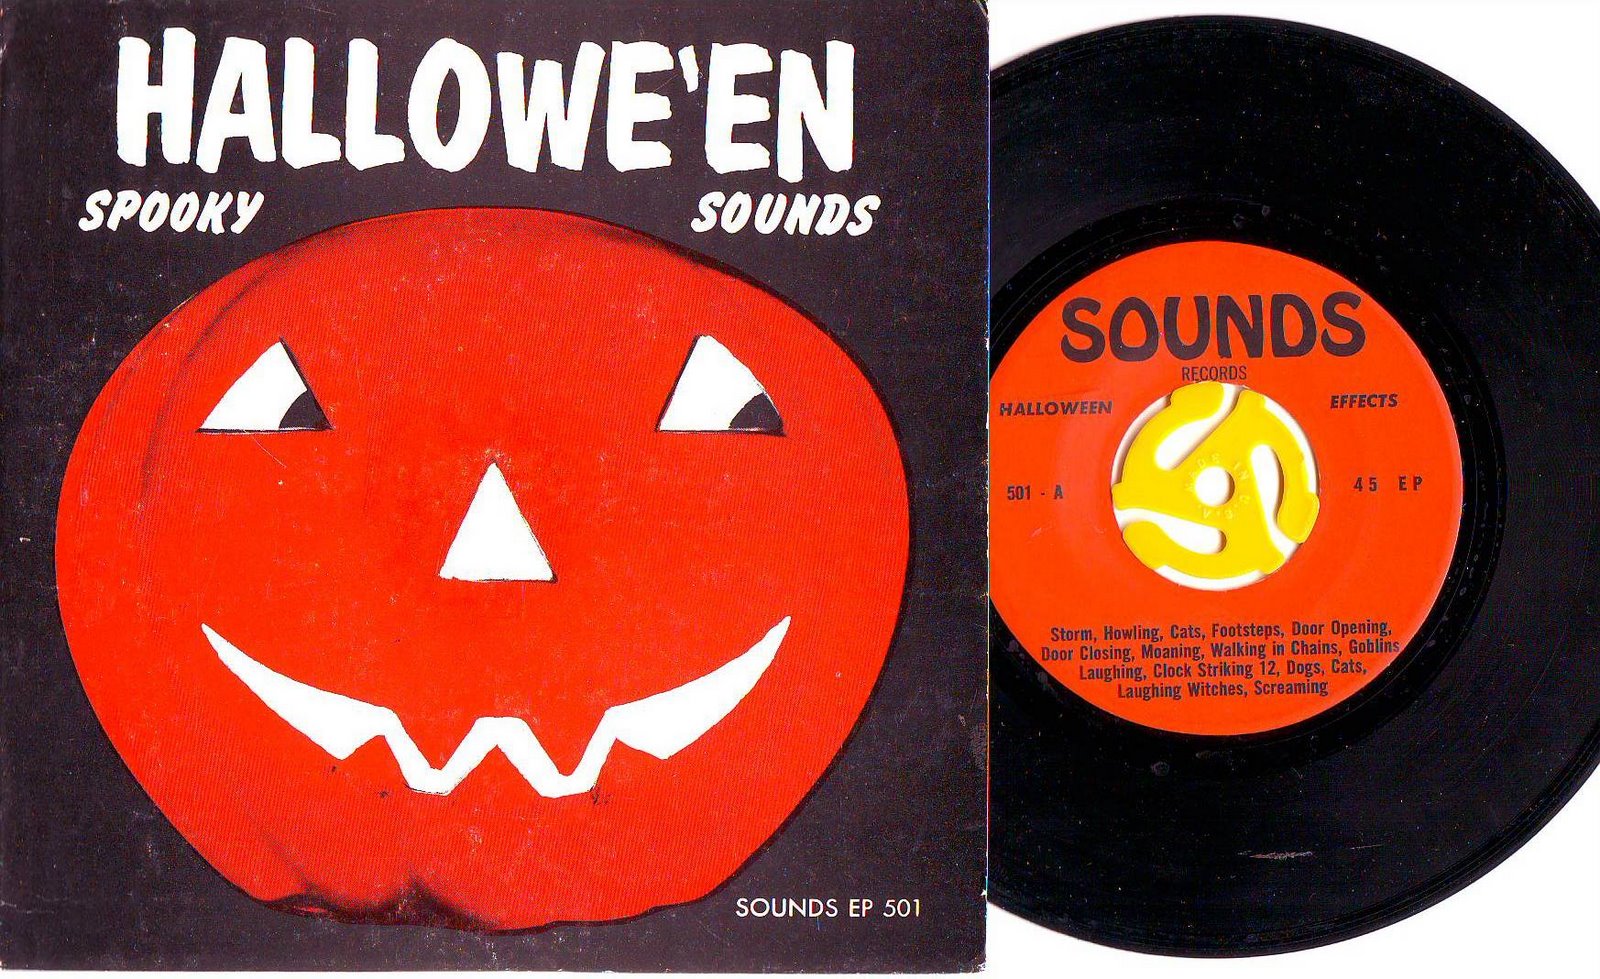 HALLOWE'EN spooky sounds